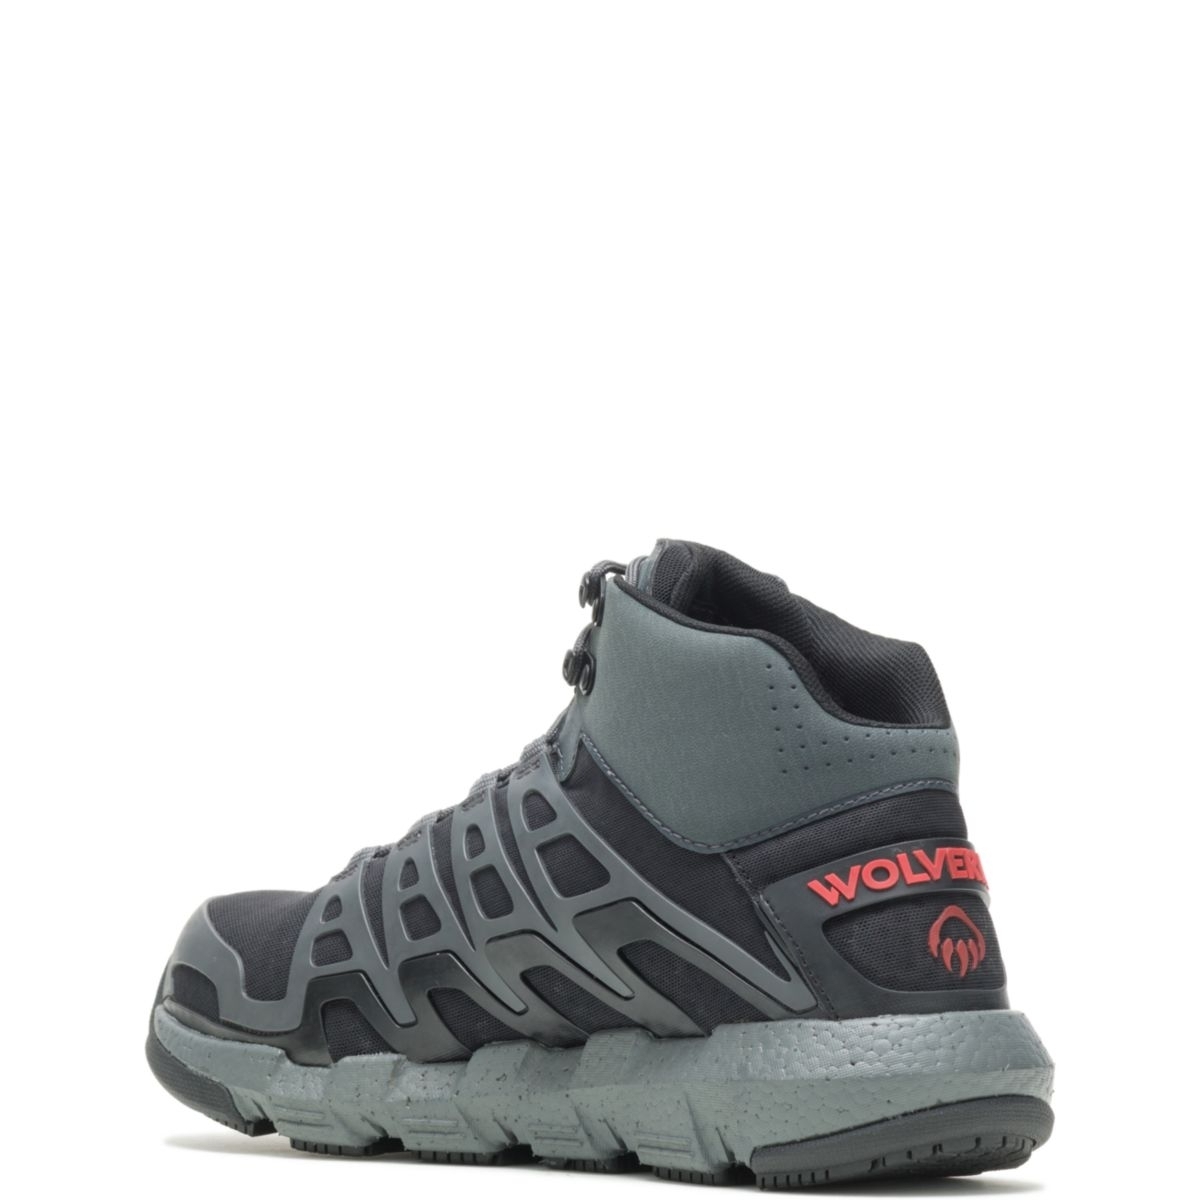 WOLVERINE Men's Rev Vent UltraSpringâ¢ DuraShocksÂ® CarbonMAXÂ® Composite Toe Work Boot Charcoal/Red - W211018 Charcoal/Red - Charcoal/Red, 7